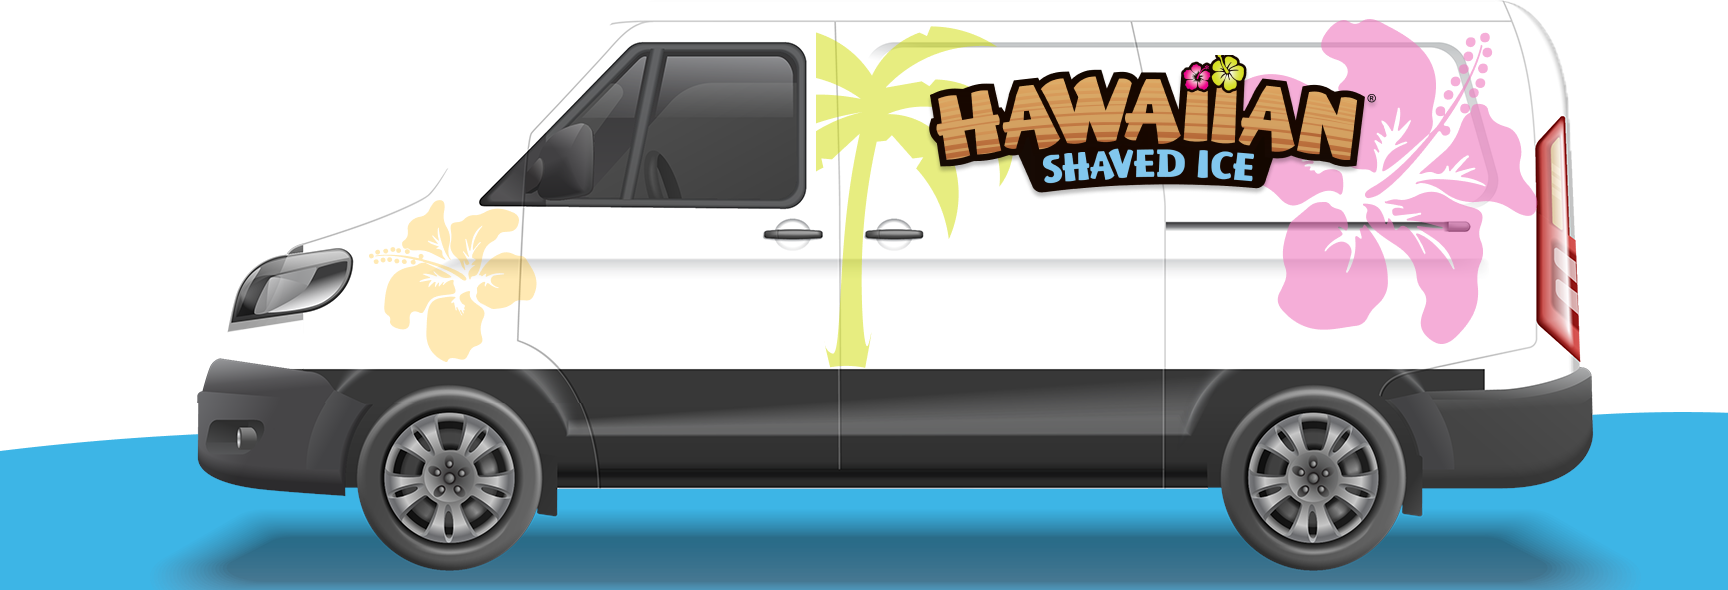 hawaiian shaved ice van